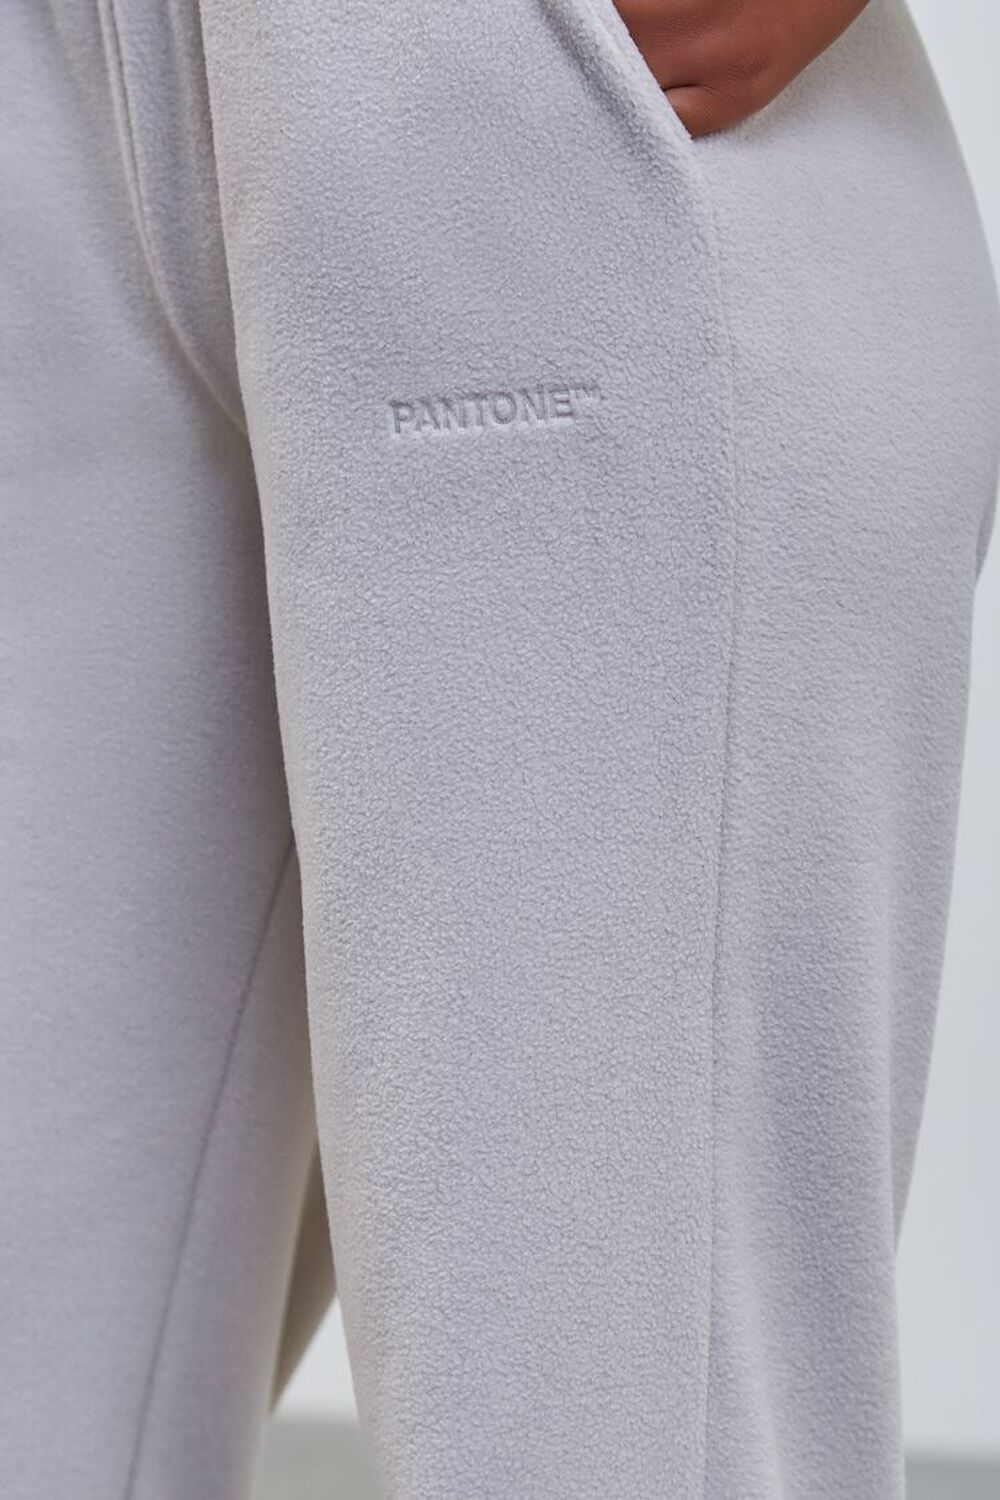 Pantone Fleece